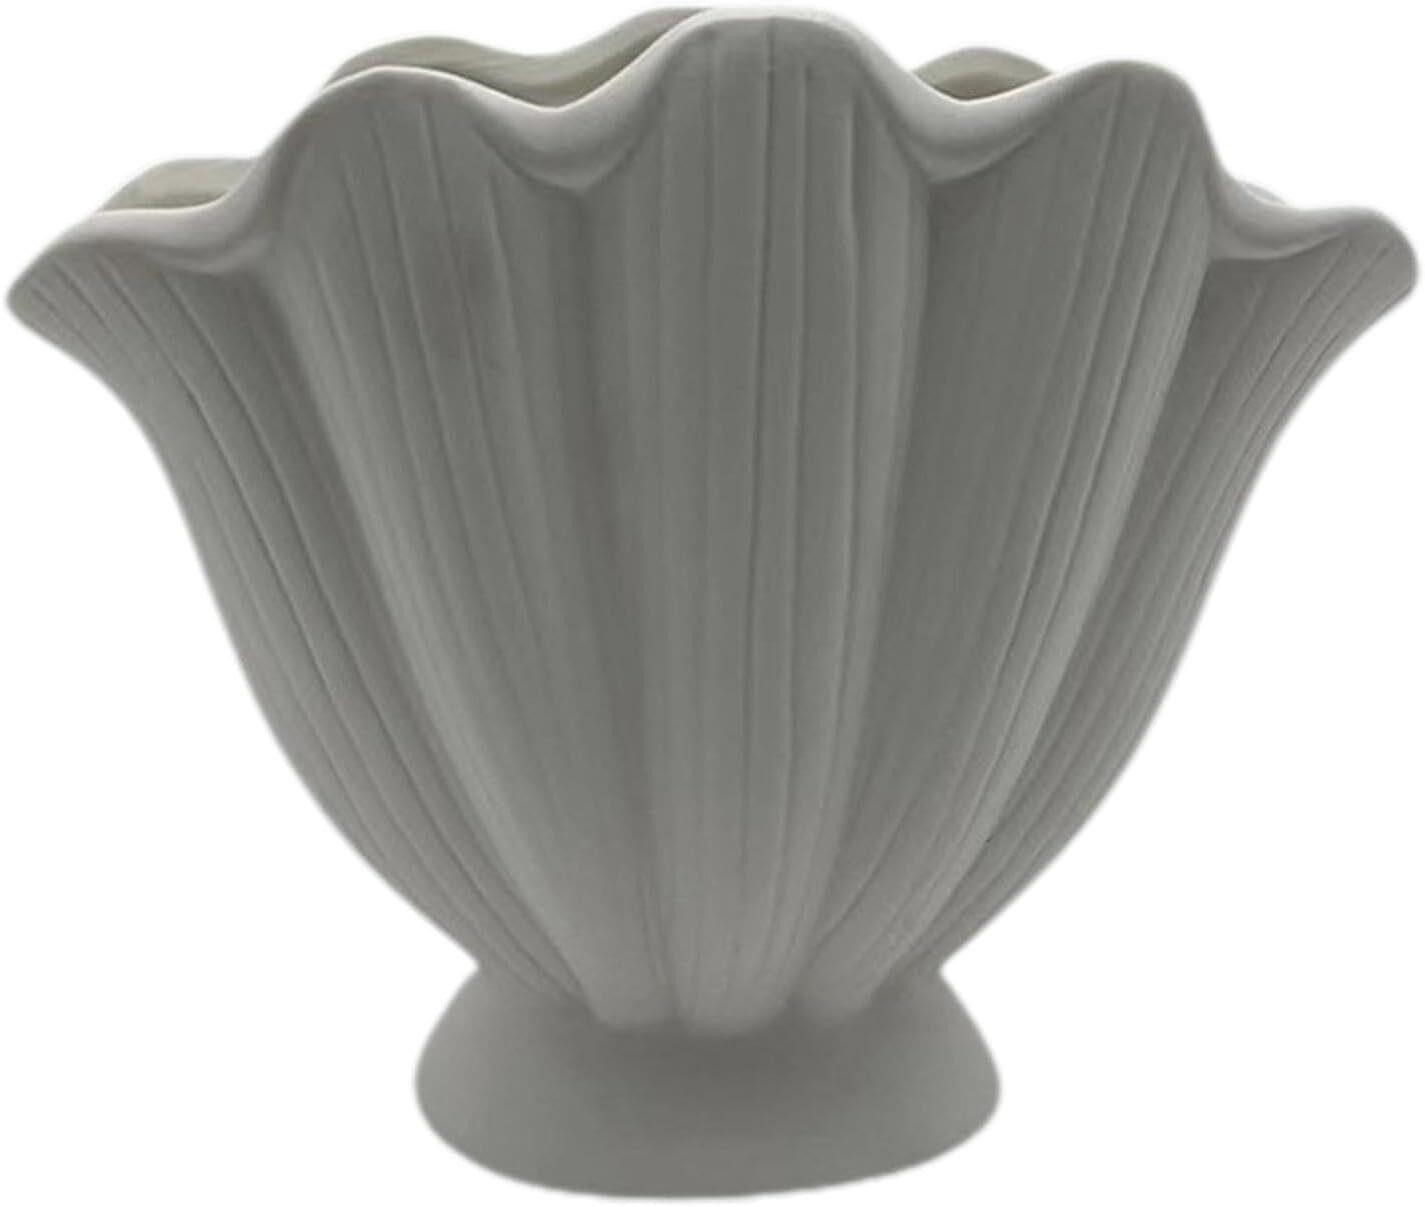 Shell Vase, Ceramic, Modern Art Type A